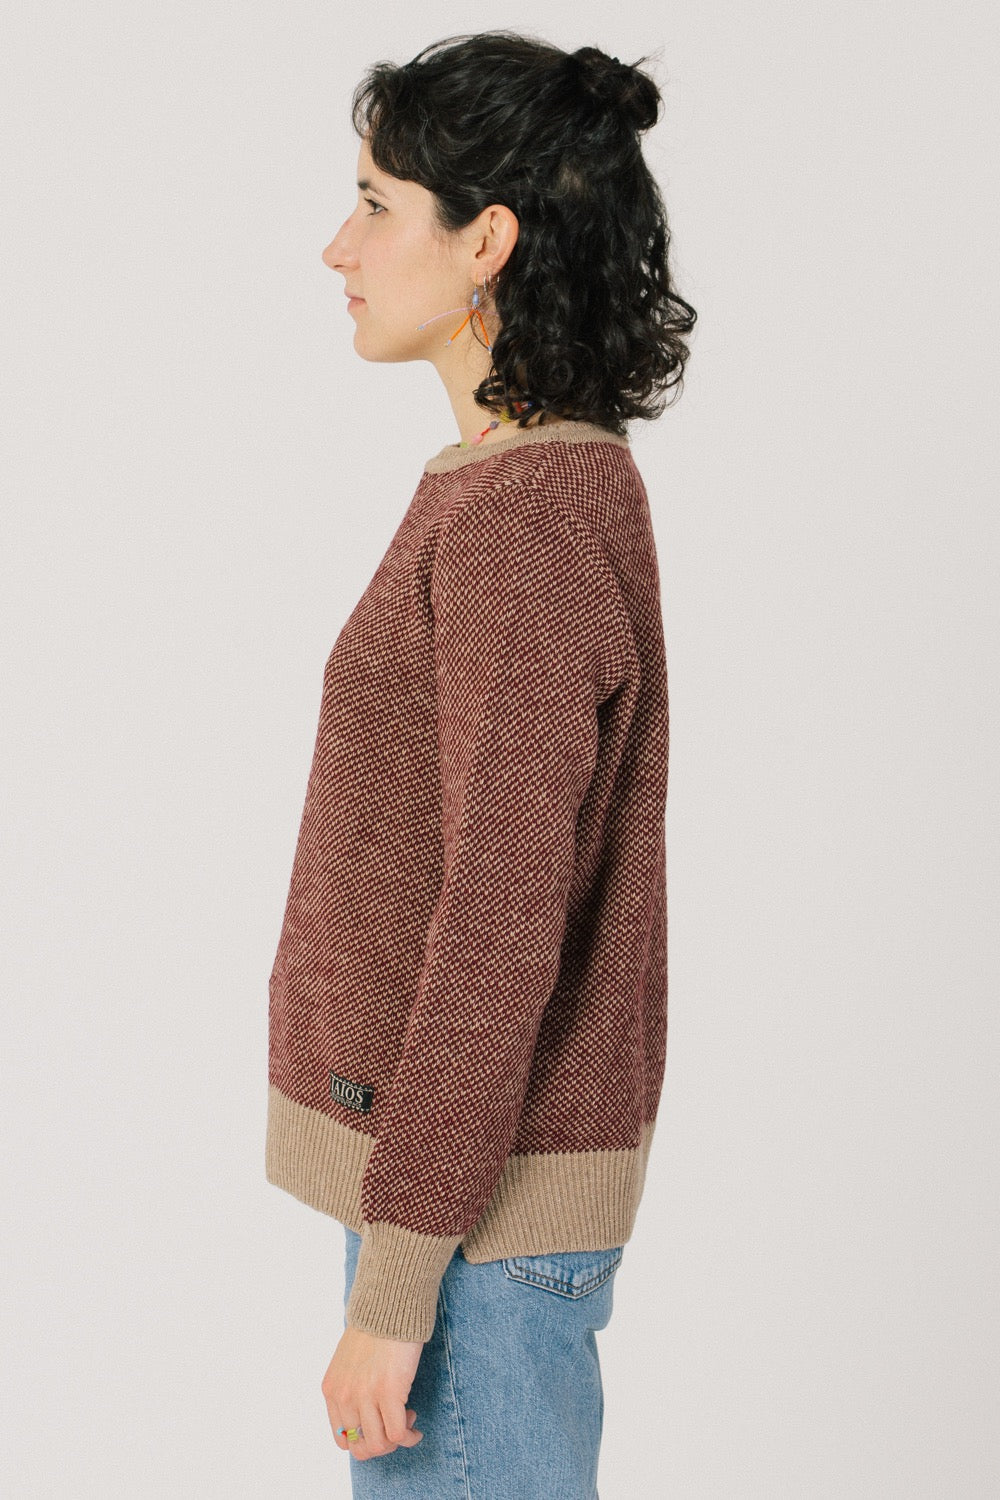 La forma del jersei és el patró bàsic i recte amb uns talls als costats.